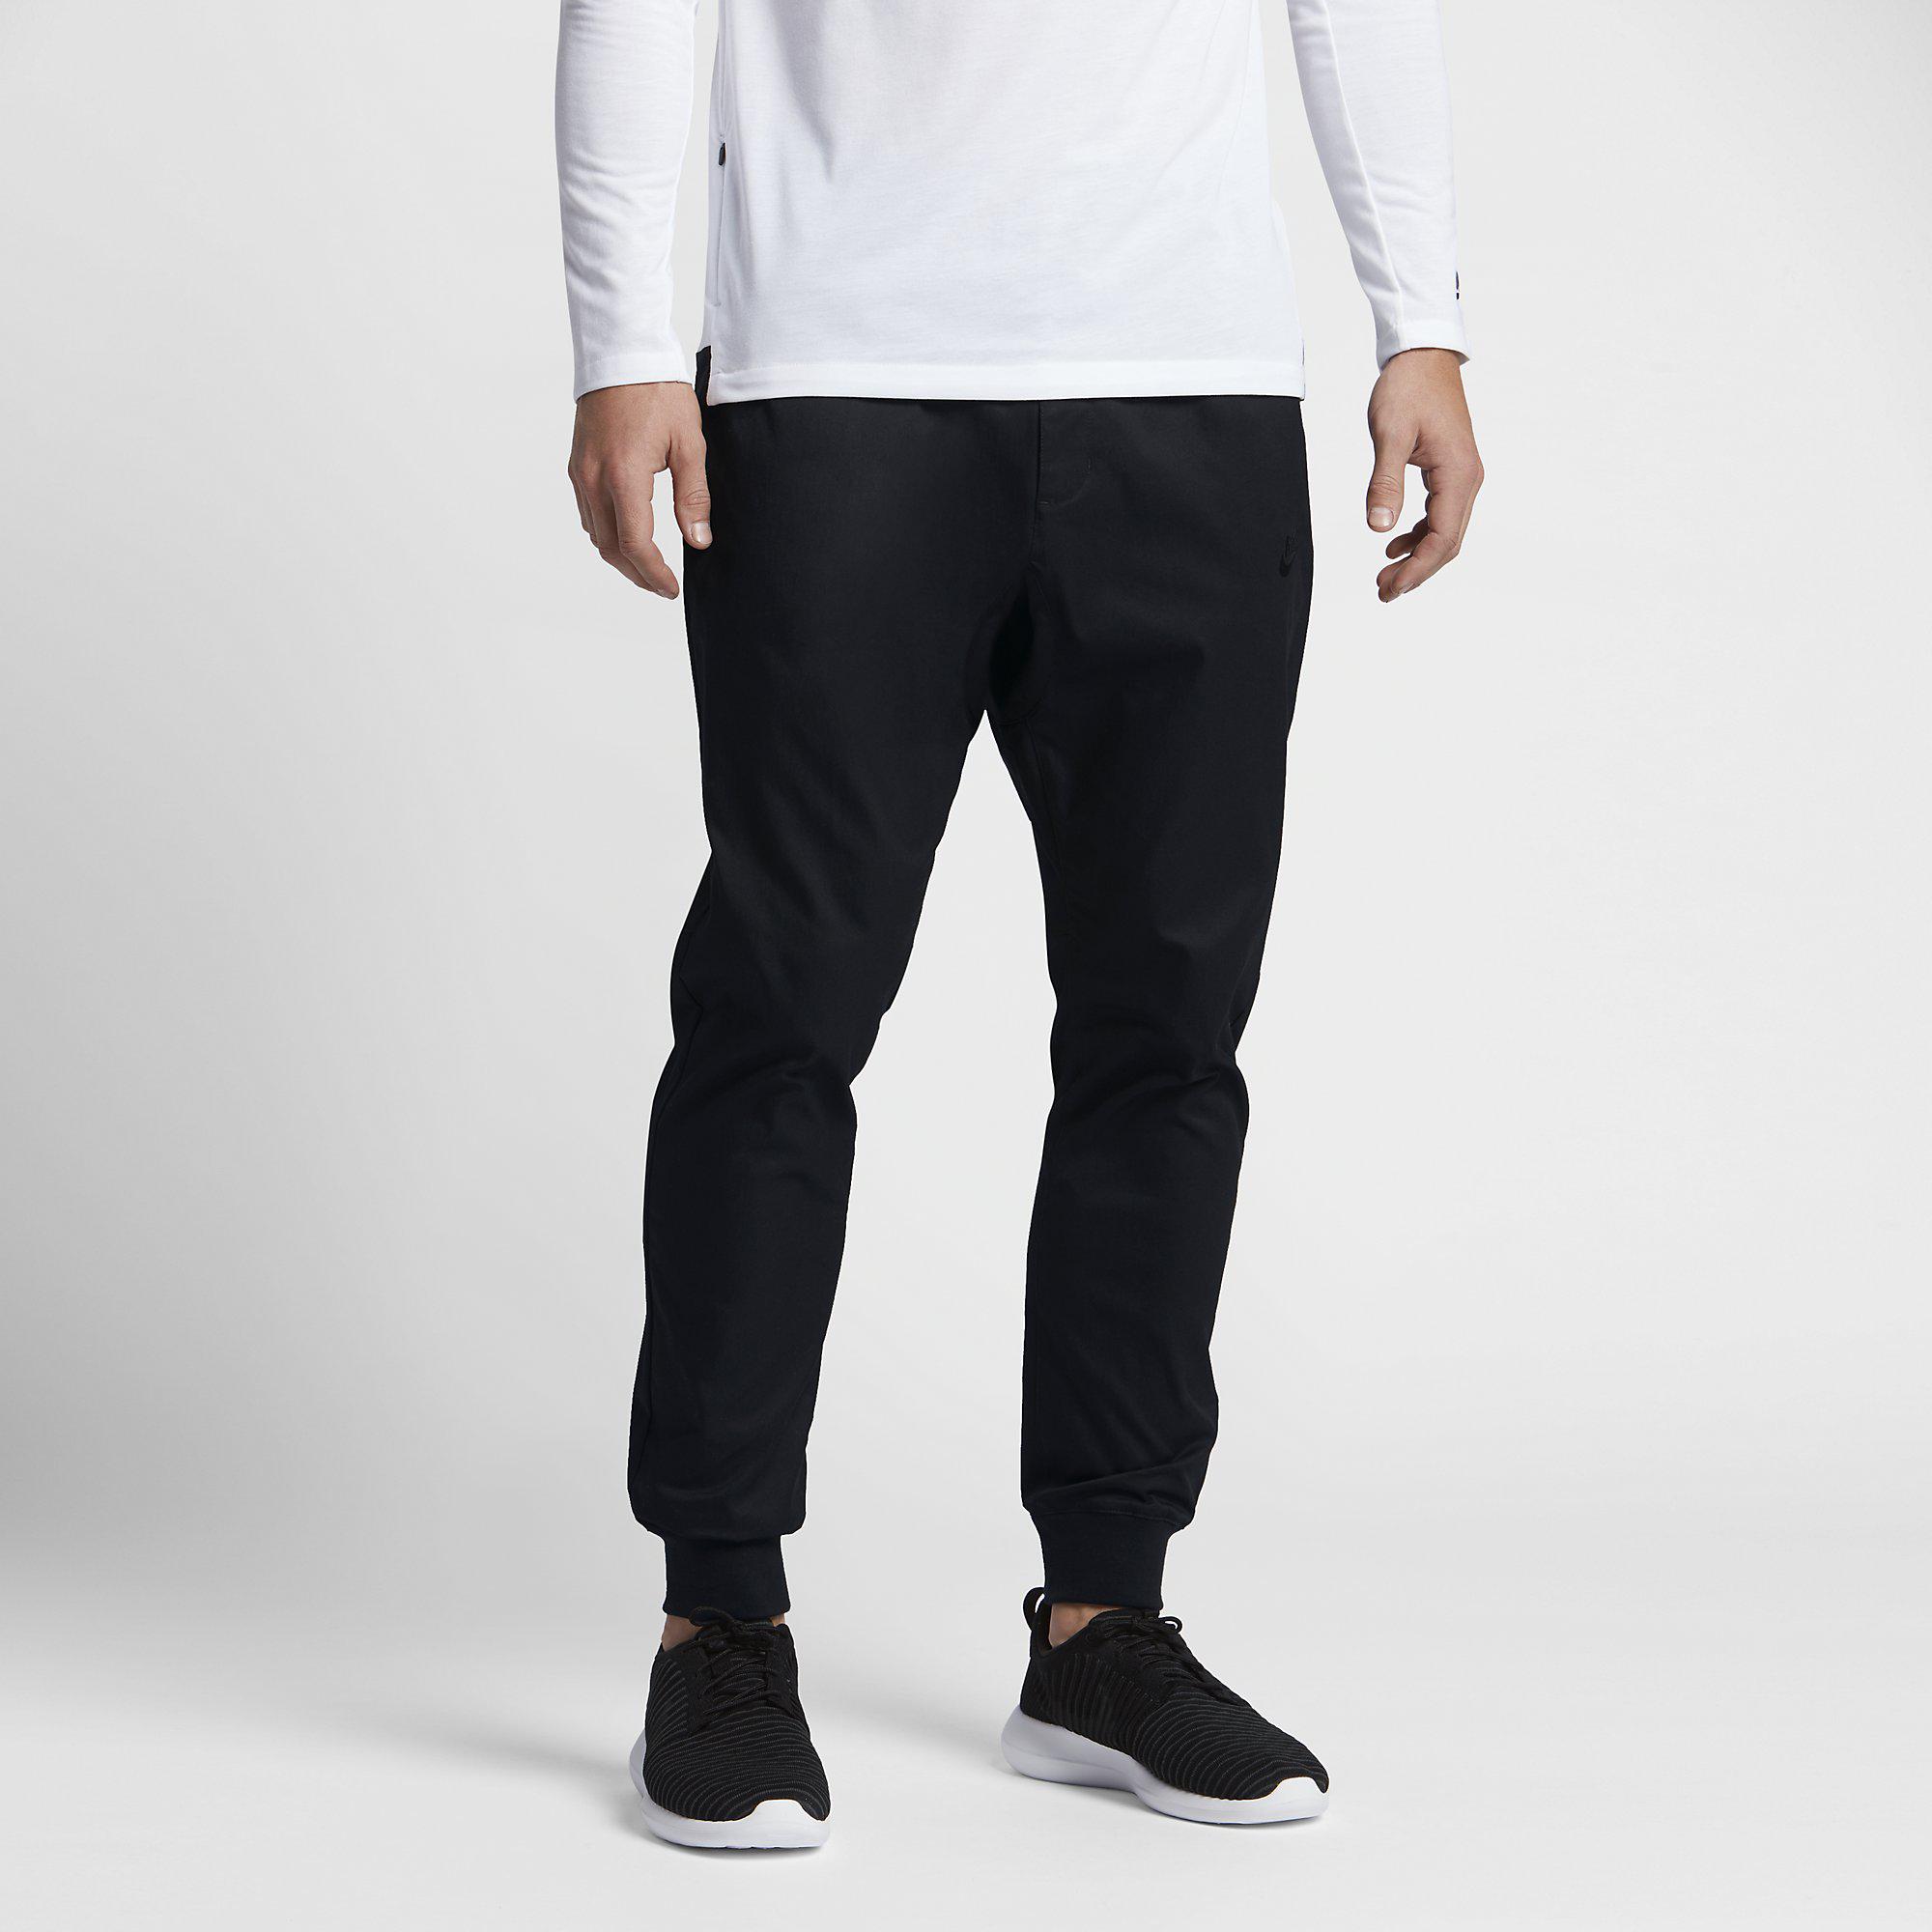 Nike Mens Sportswear Jogger - Black - Tennisnuts.com